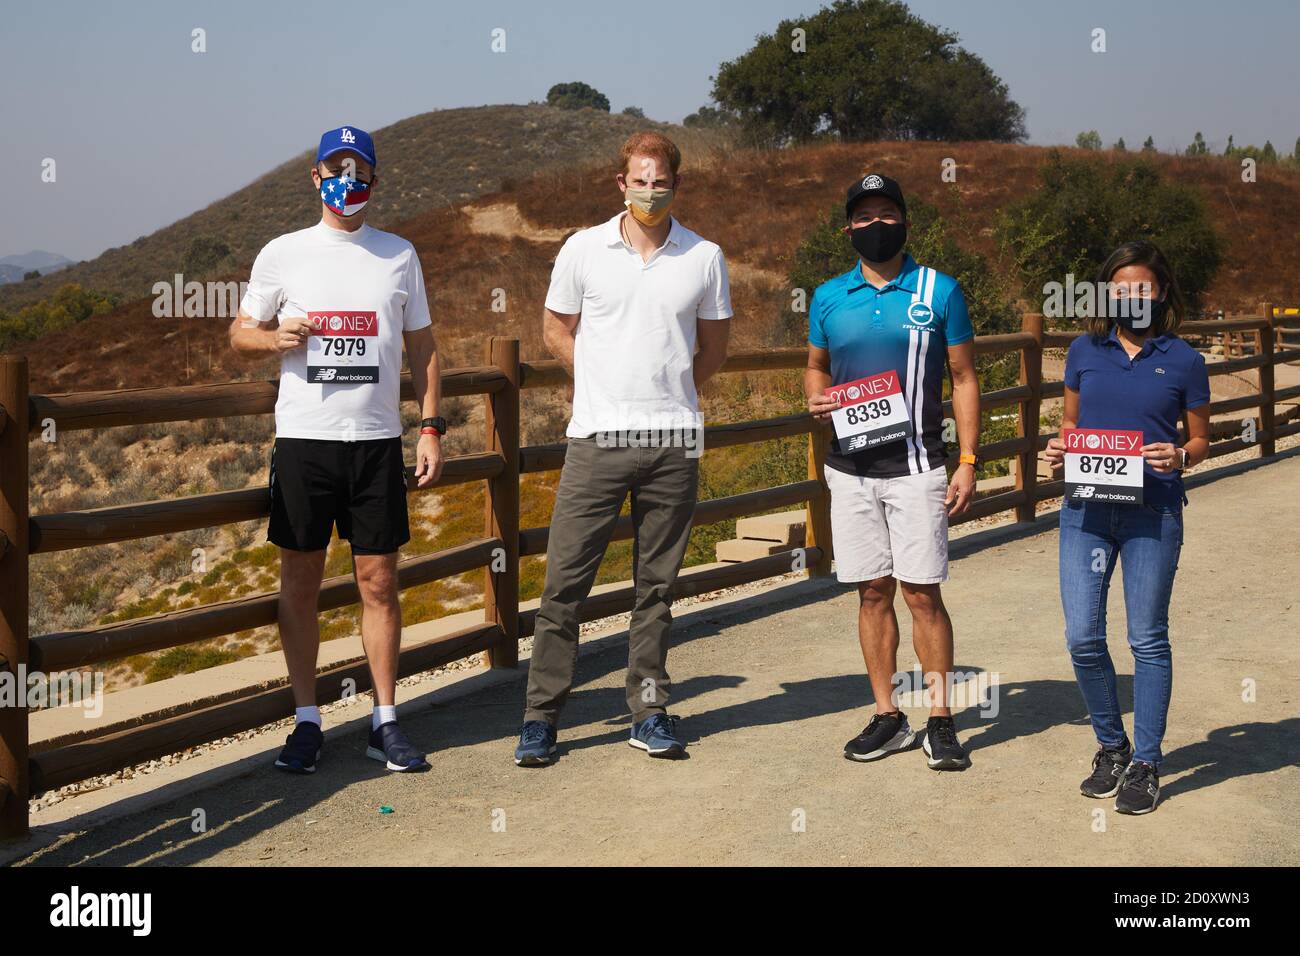 Der Duke of Sussex, Patron des London Marathon Charitable Trust, posiert mit Läufern in Los Angeles, bevor sie den virtuellen Virgin Money London Marathon besteigen. Stockfoto